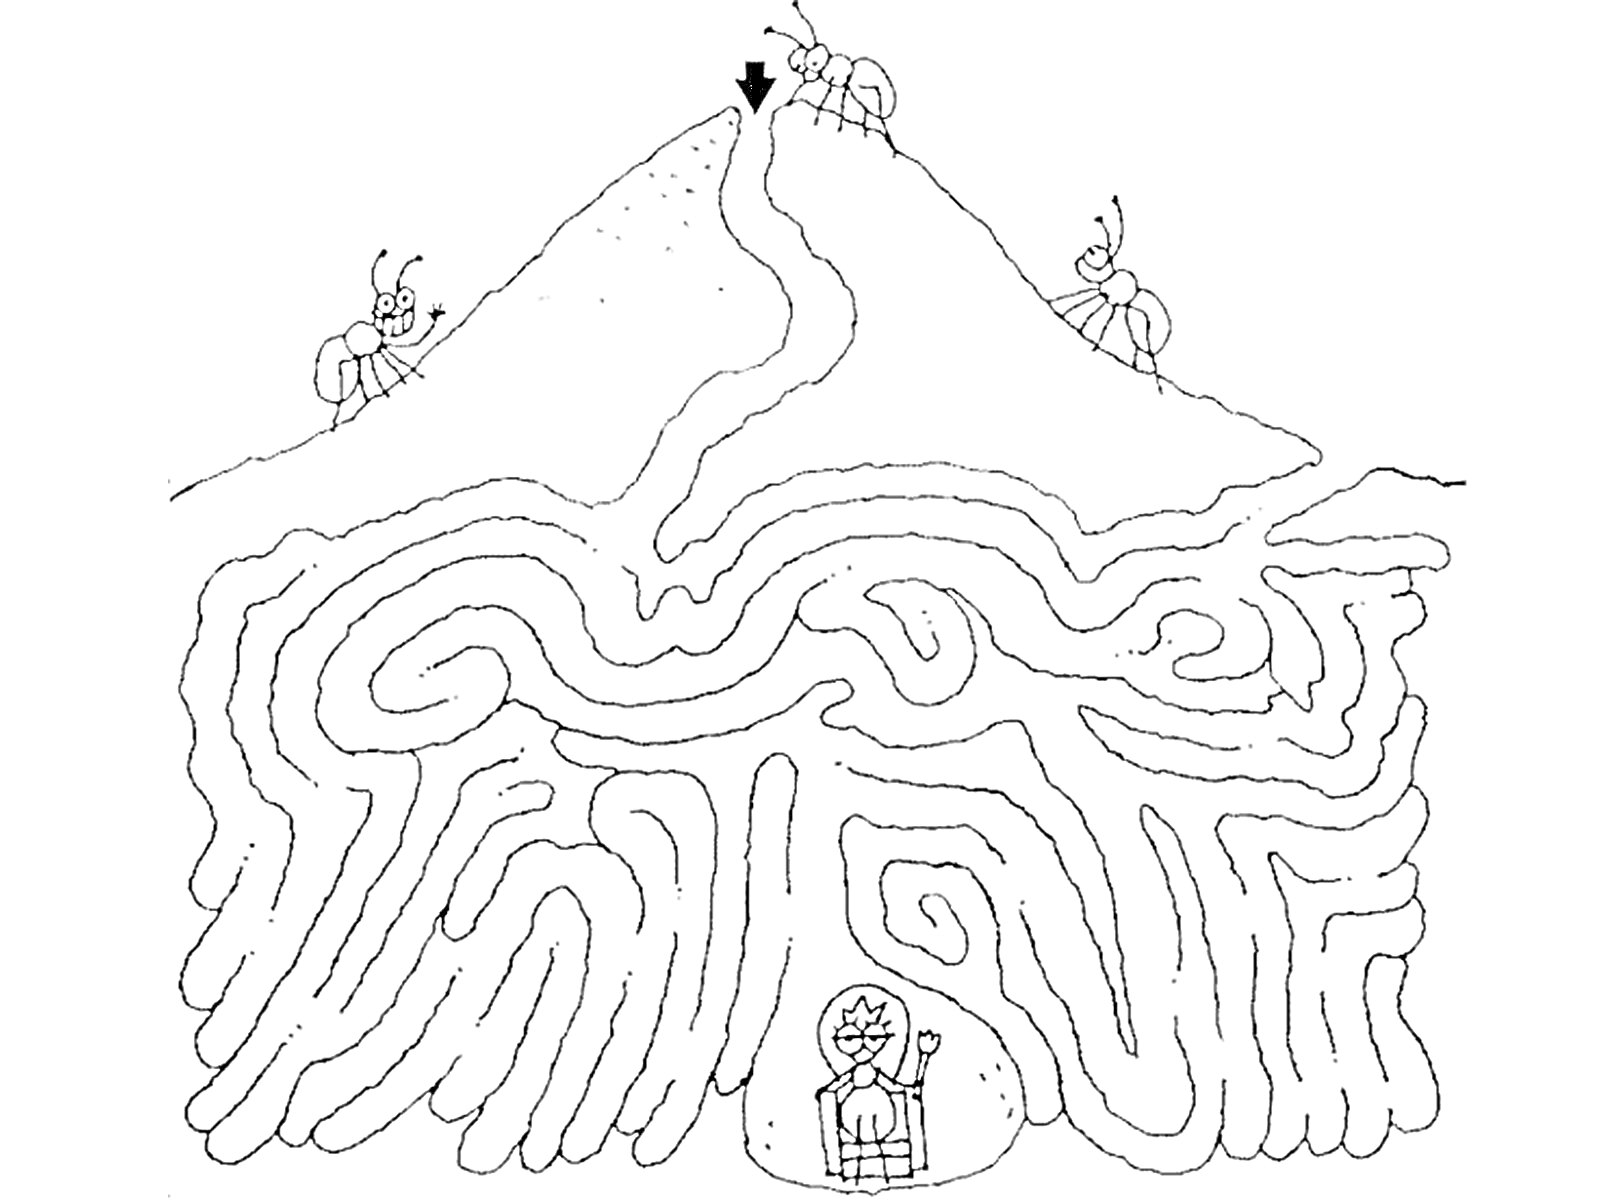 Муравьиный лабиринт на горе с фигурой в центре